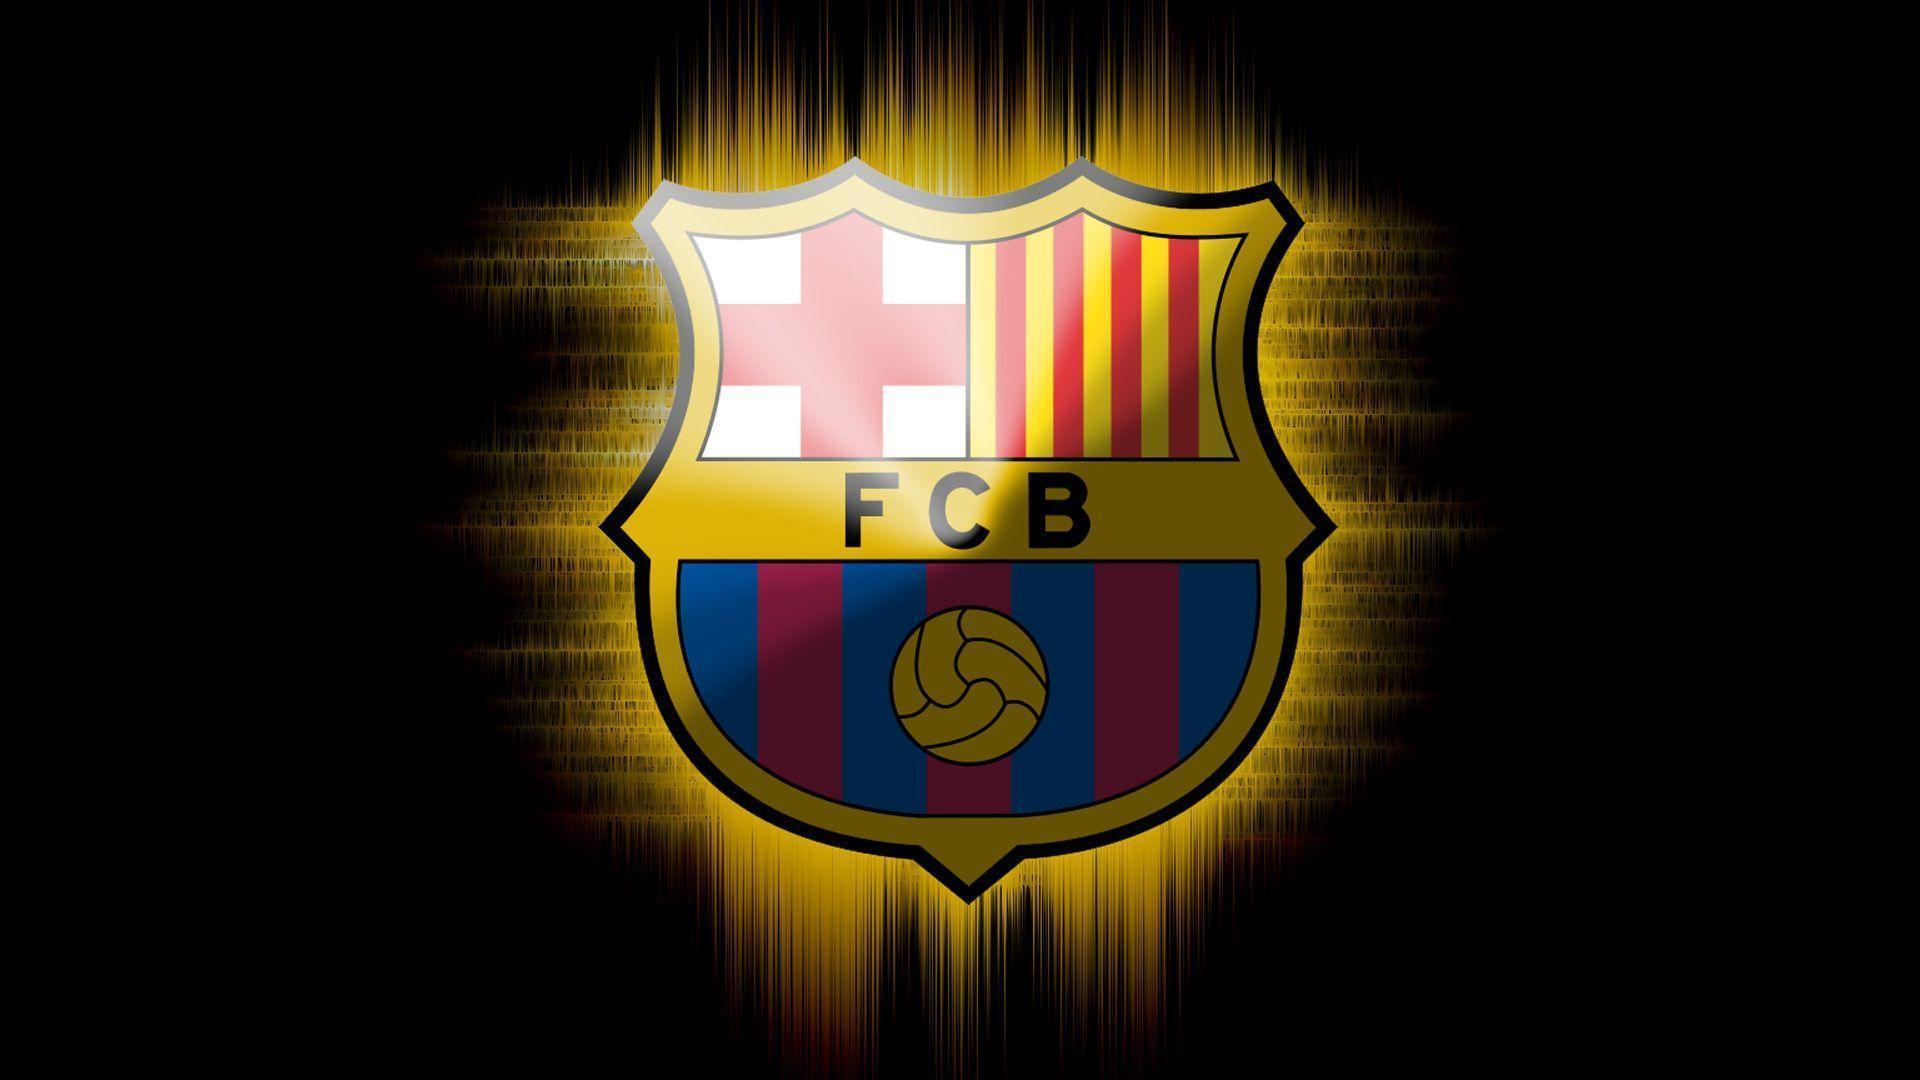 Barcelona Logo Wallpaper. Wallpaper, Background, Image, Art